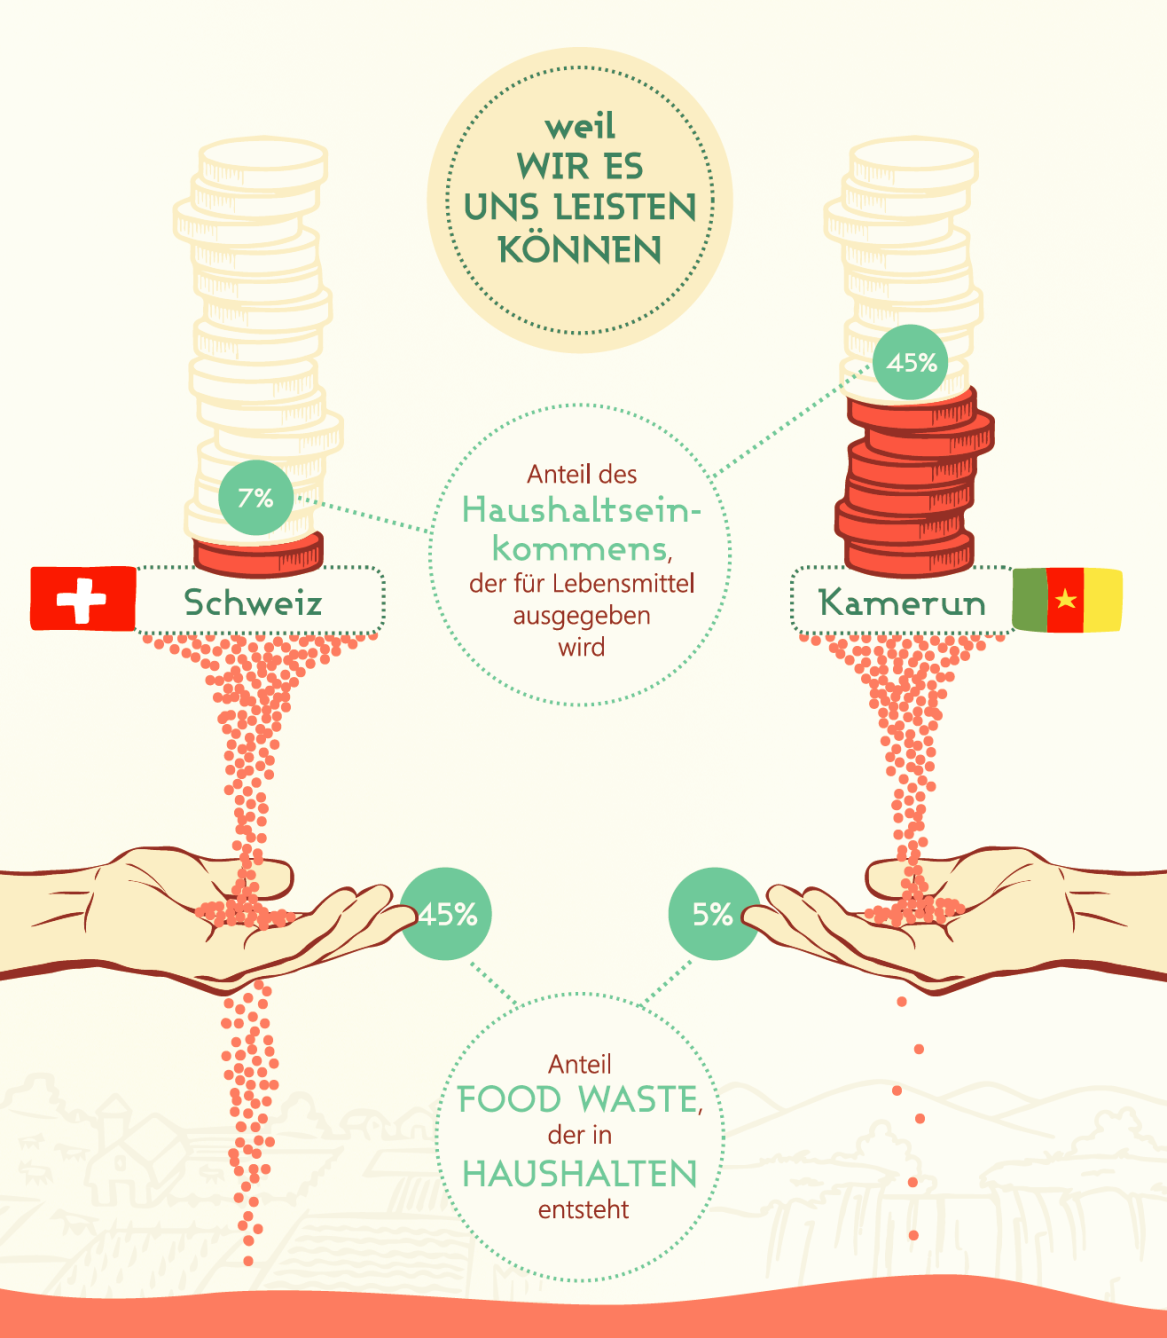 Vergrösserte Ansicht: Vergleich Schweiz - Kamerun